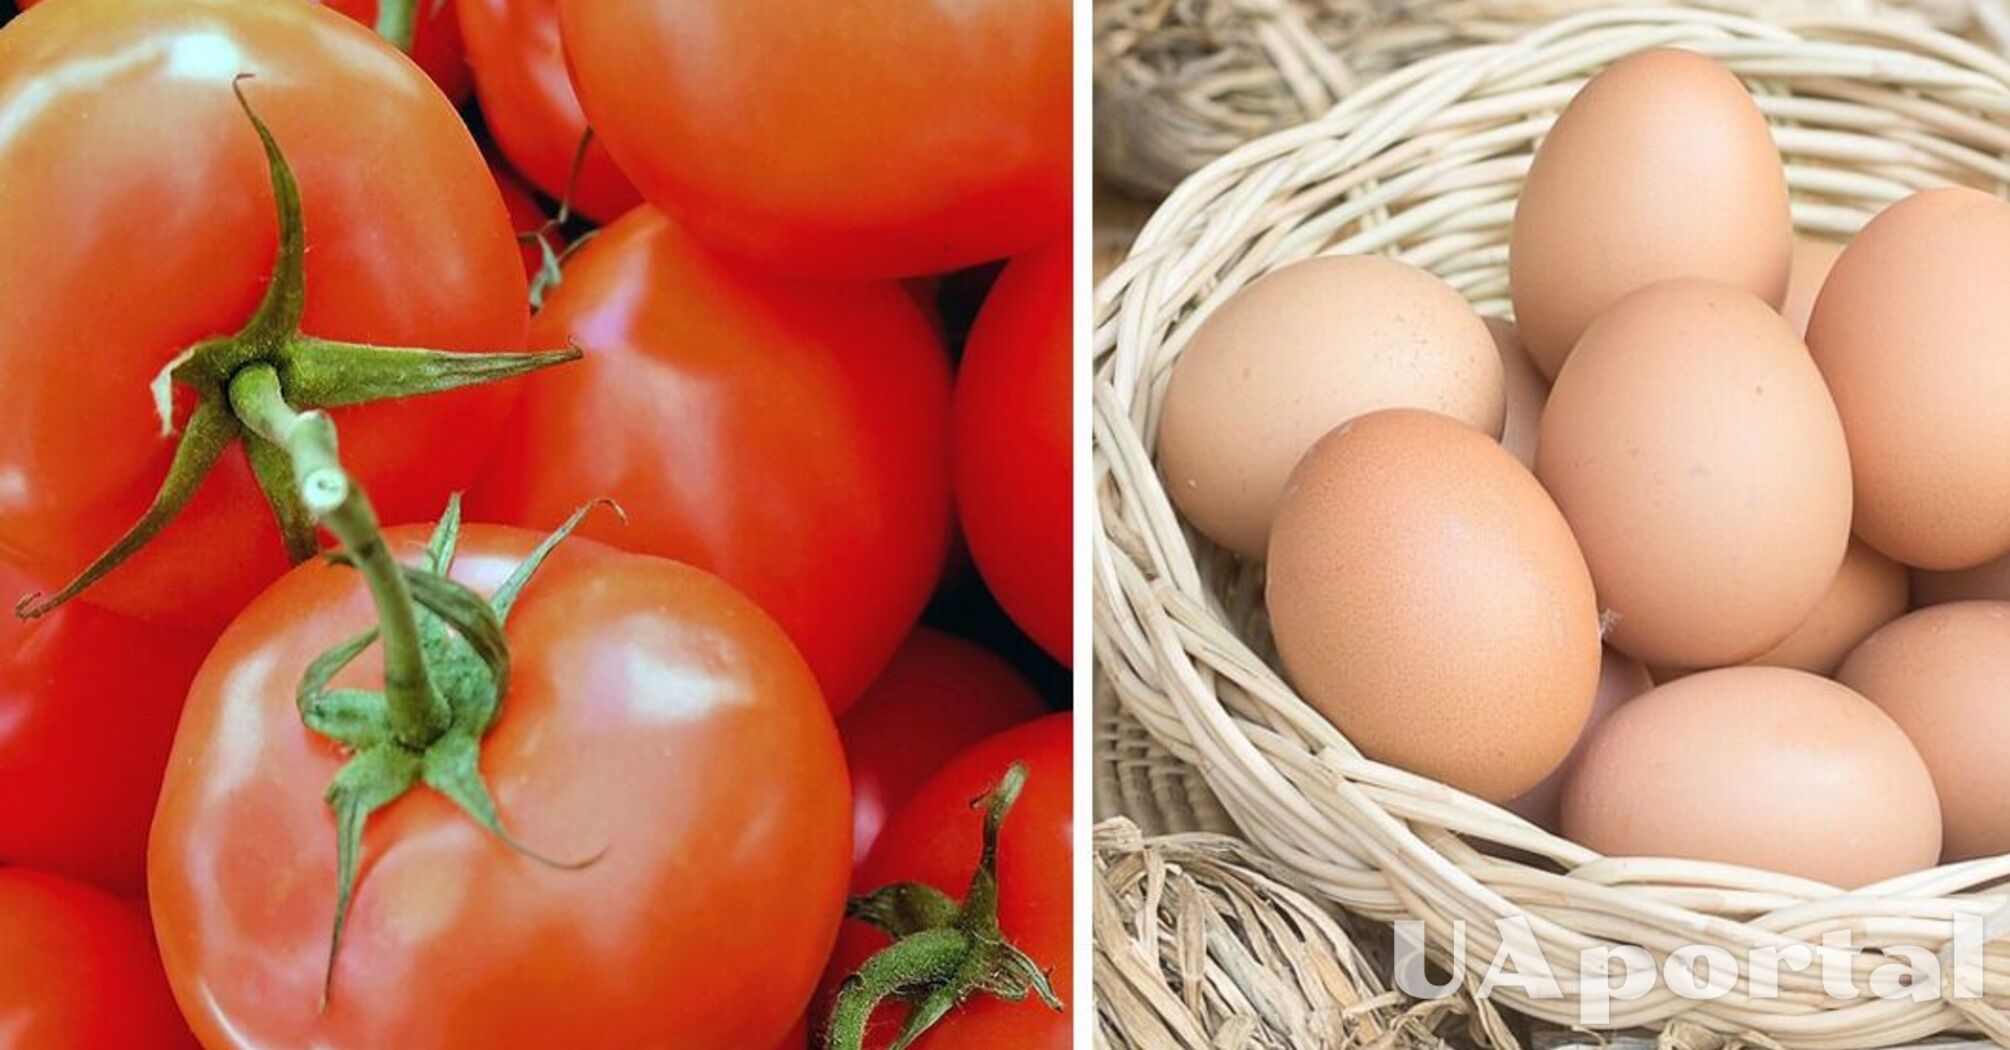 Специалисты подсказали рецепт дешевого домашнего удобрения для помидоров, чтобы увеличить урожай